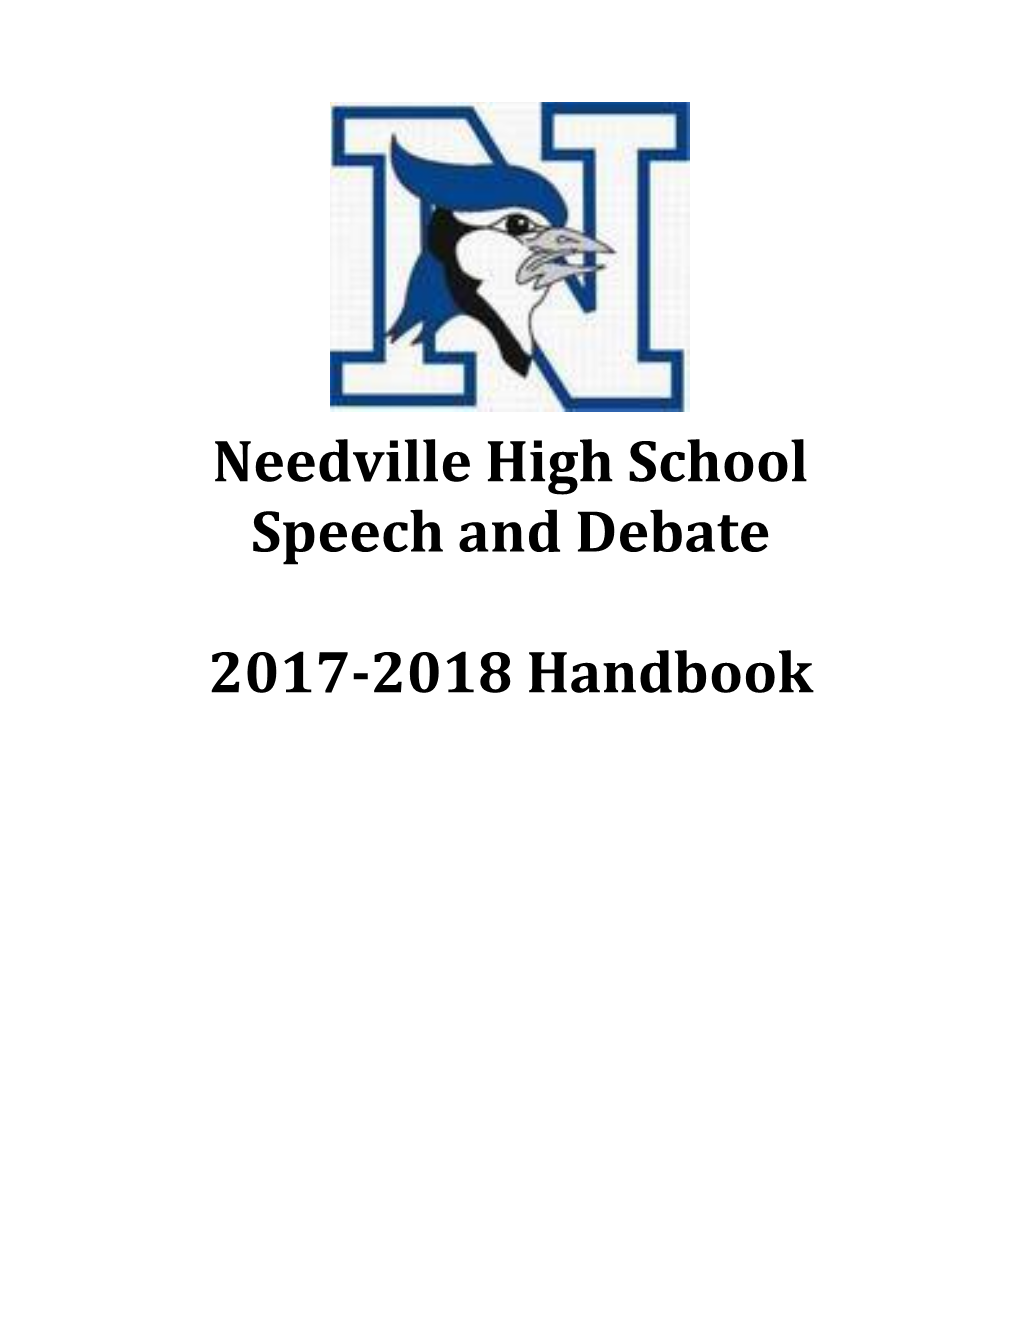 Needville High School s1